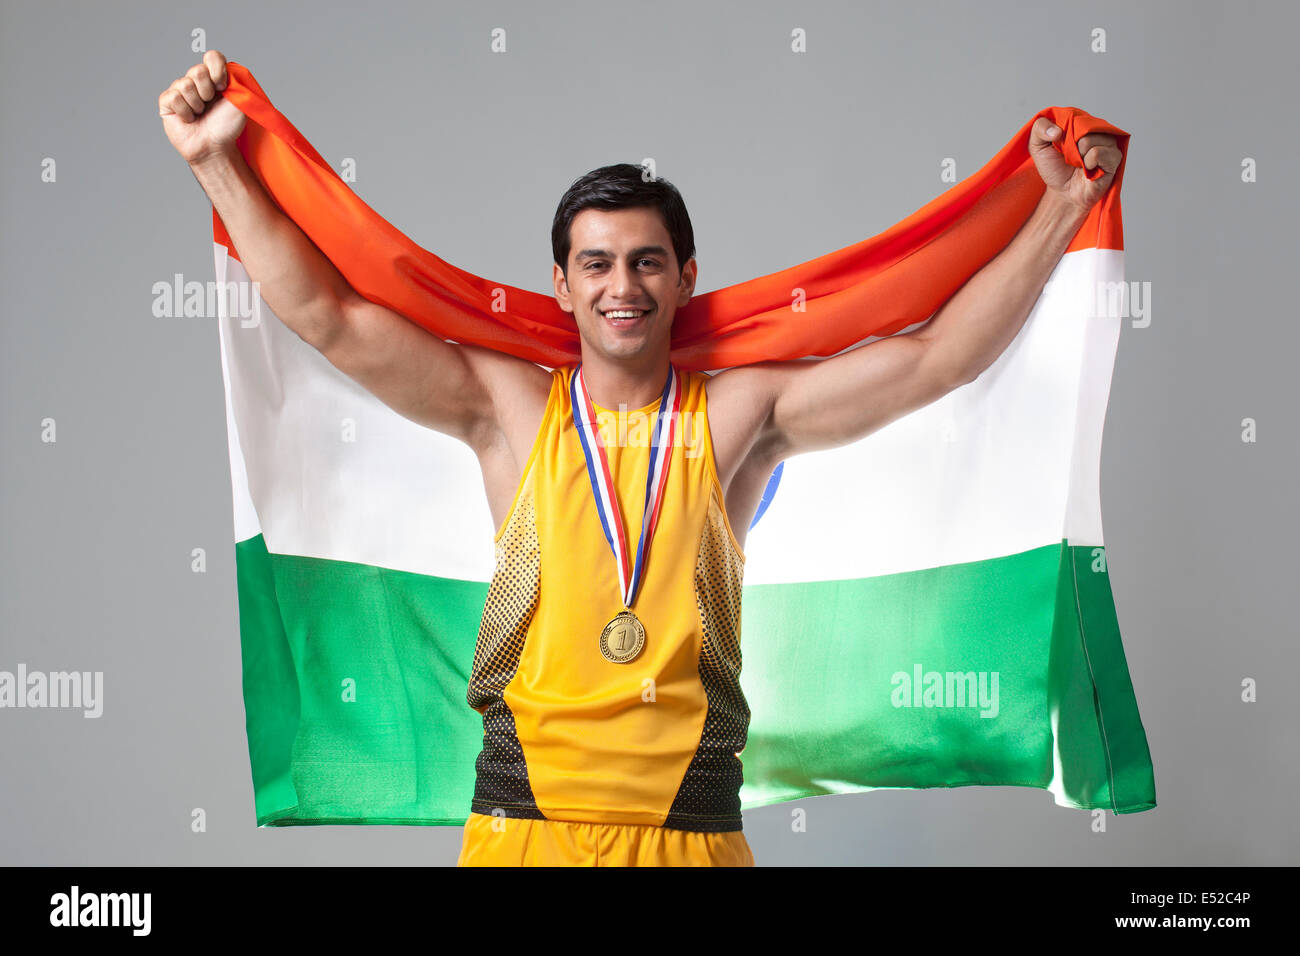 Portrait de l'homme célèbrent la victoire avec médaillé drapeau indien contre l'arrière-plan gris Banque D'Images